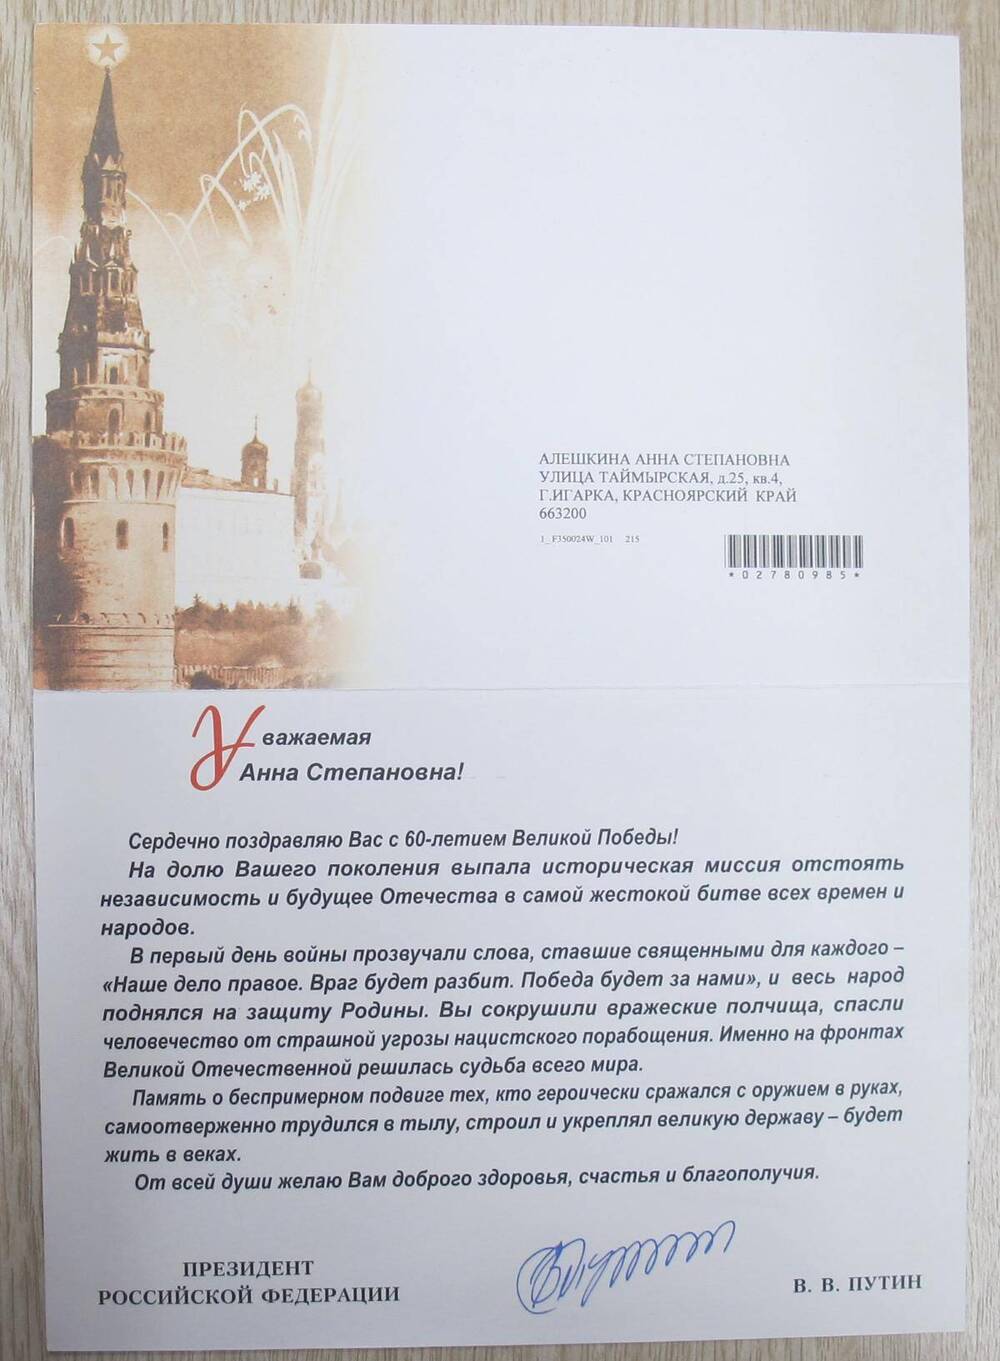 Поздравительная открытка от президента РФ В. В. Путина с 60-летием Великой Победы А. С. Алешкиной.